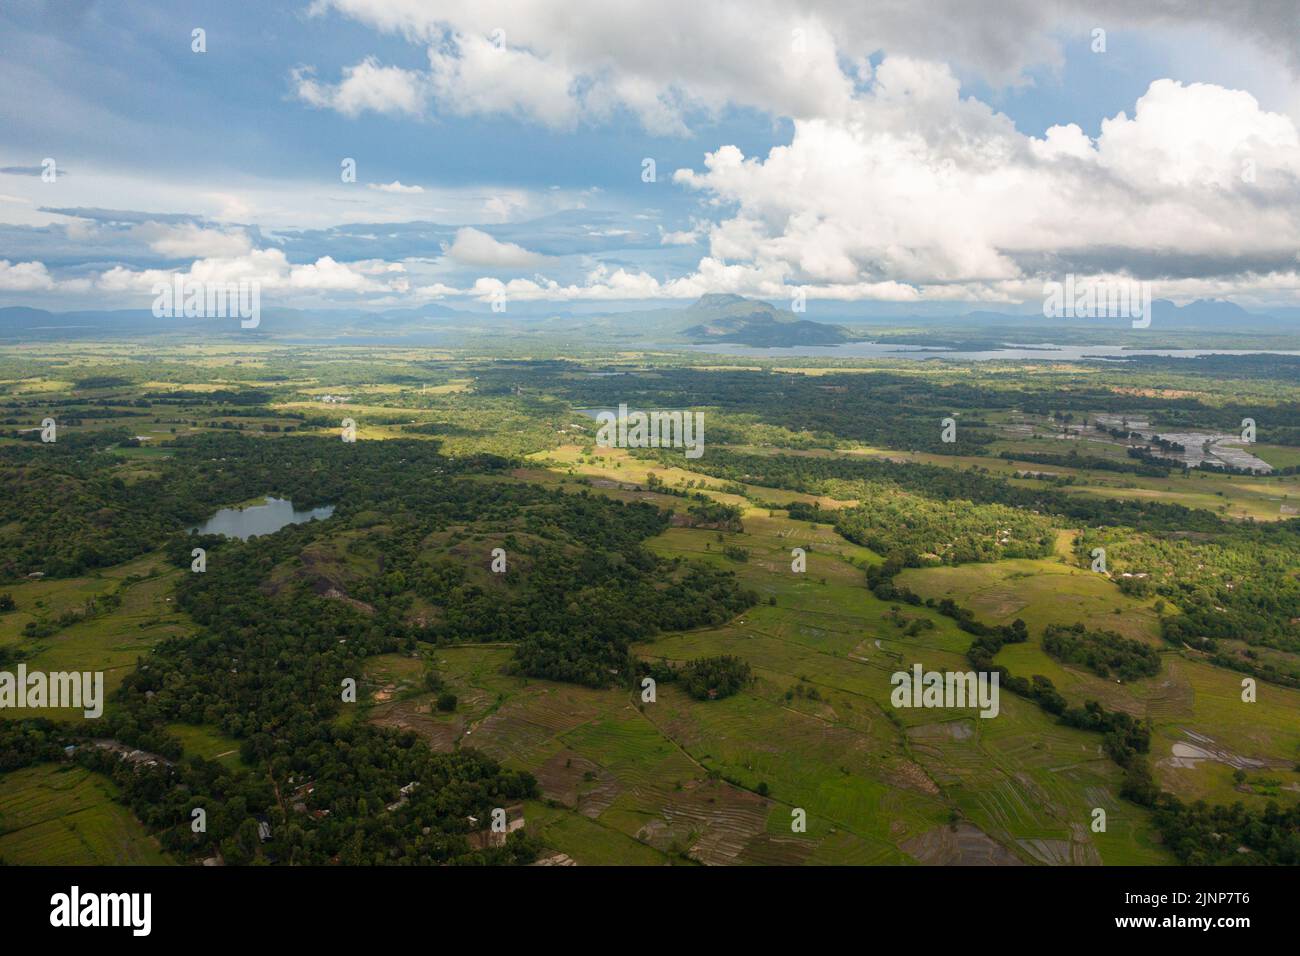 Veduta aerea della zona rurale con risaie e terreno coltivato. Sri Lanka. Foto Stock